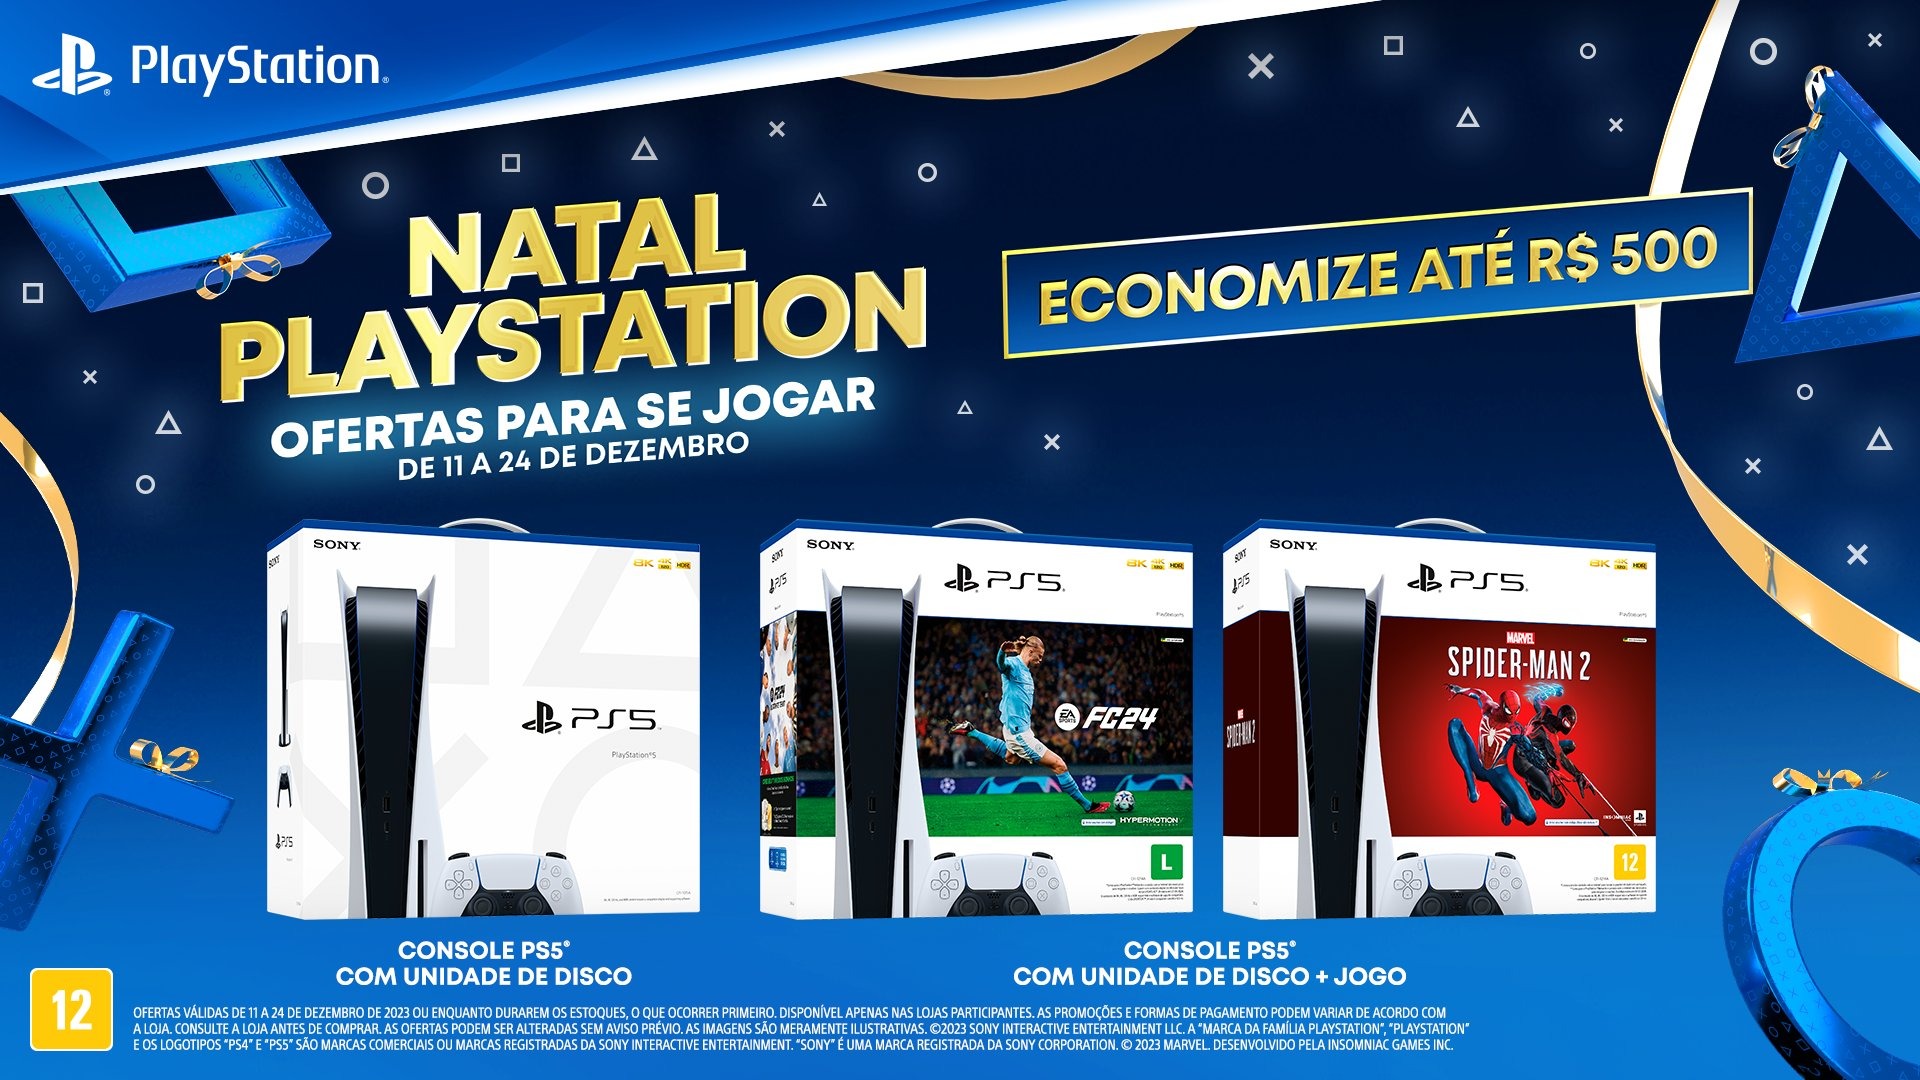 Compre o PS5 - Consoles em promoção com frete grátis!